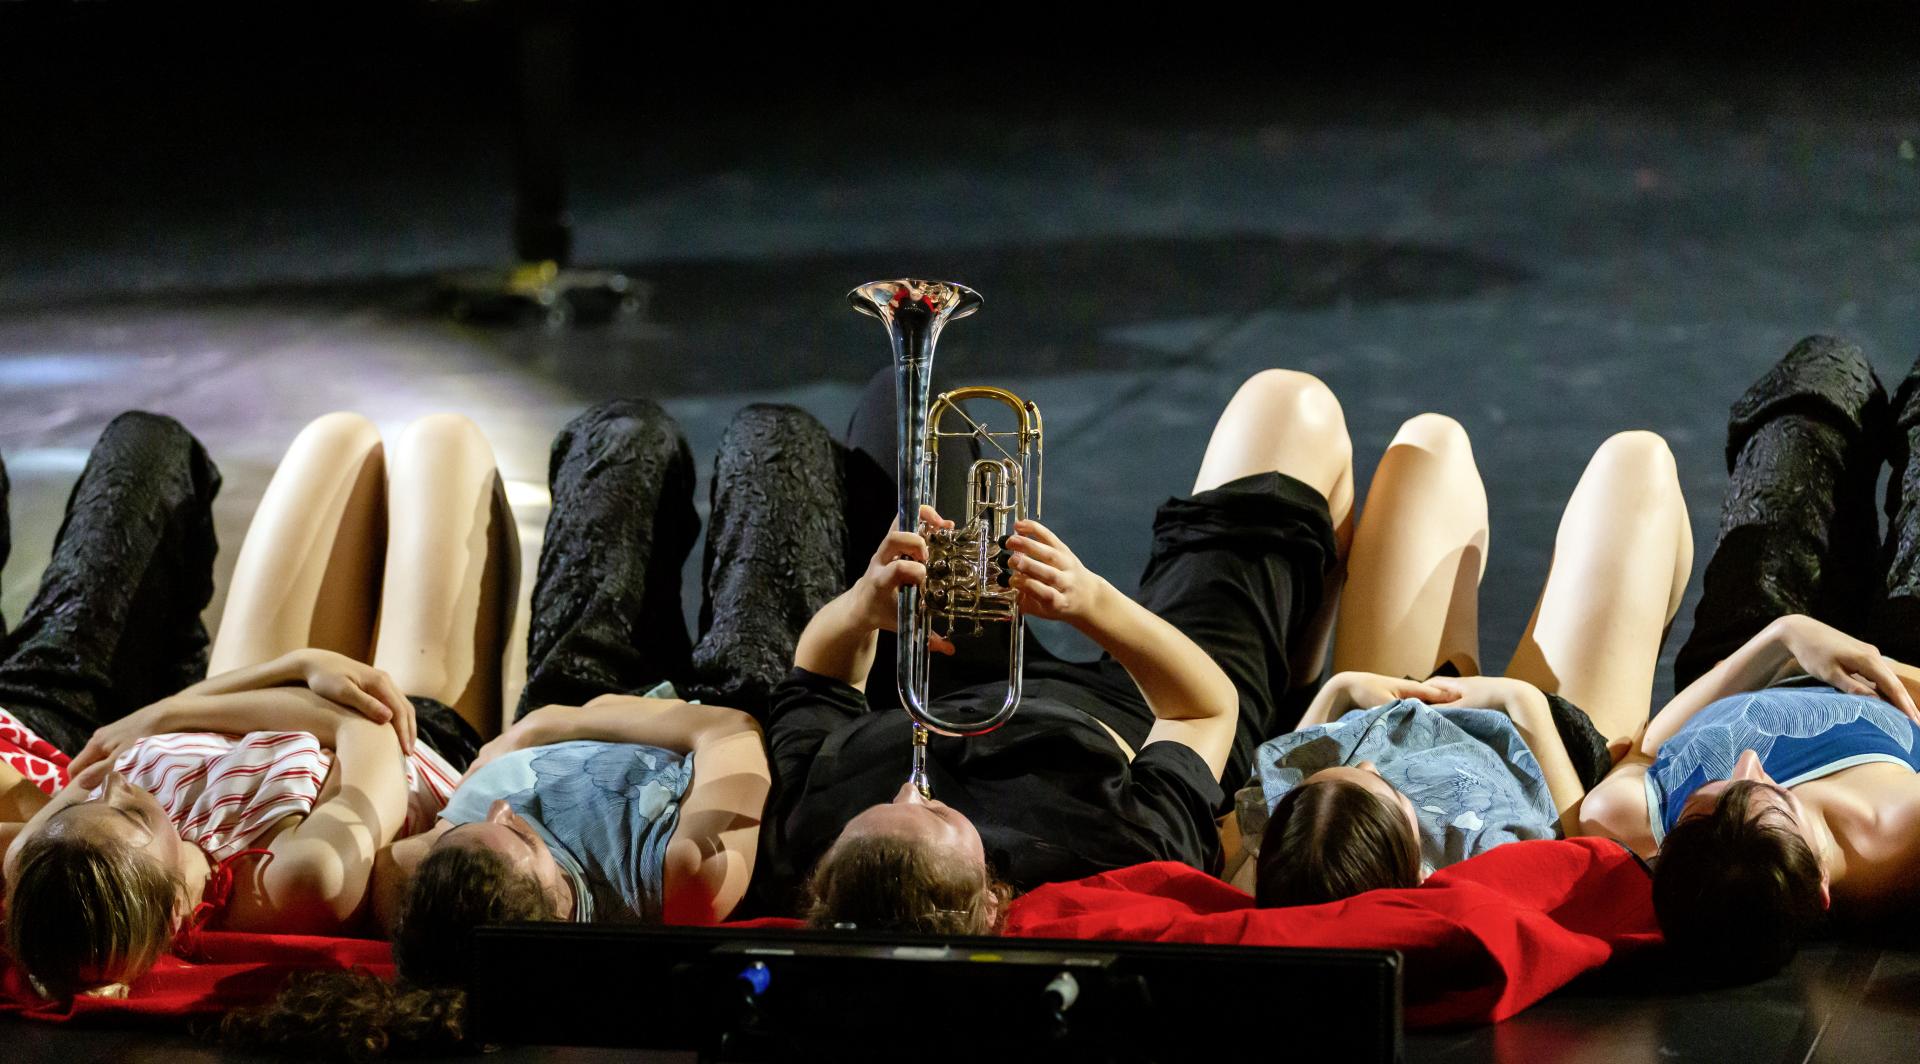 Fünf Personen liegen auf der Bühne auf dem Boden. Die Person in der Mitte spielt Trompete.